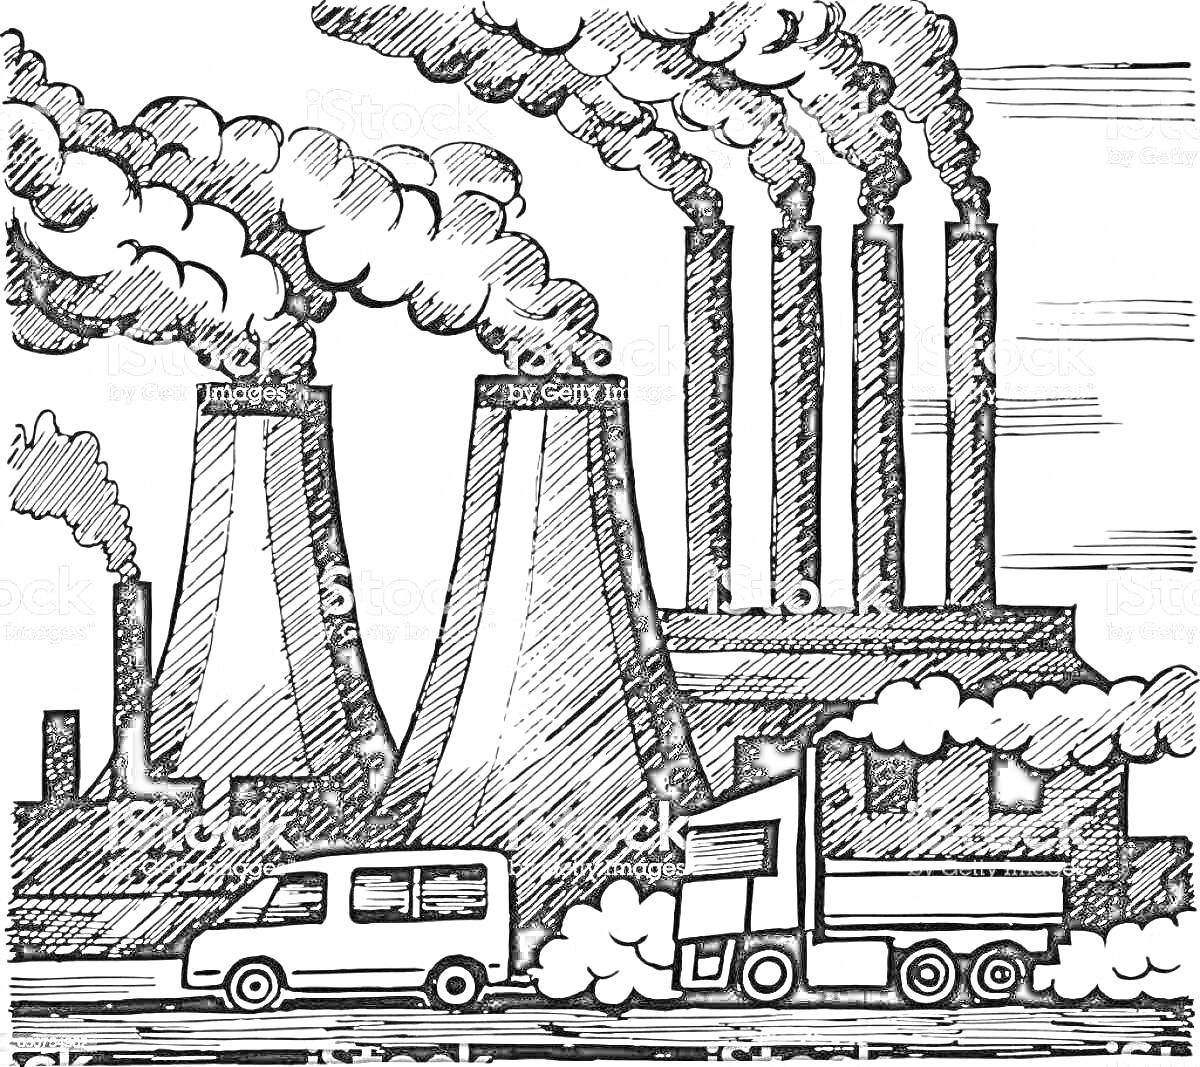 Раскраска Завод с трубами, выпускающими дым, и транспортные средства, загрязняющие воздух